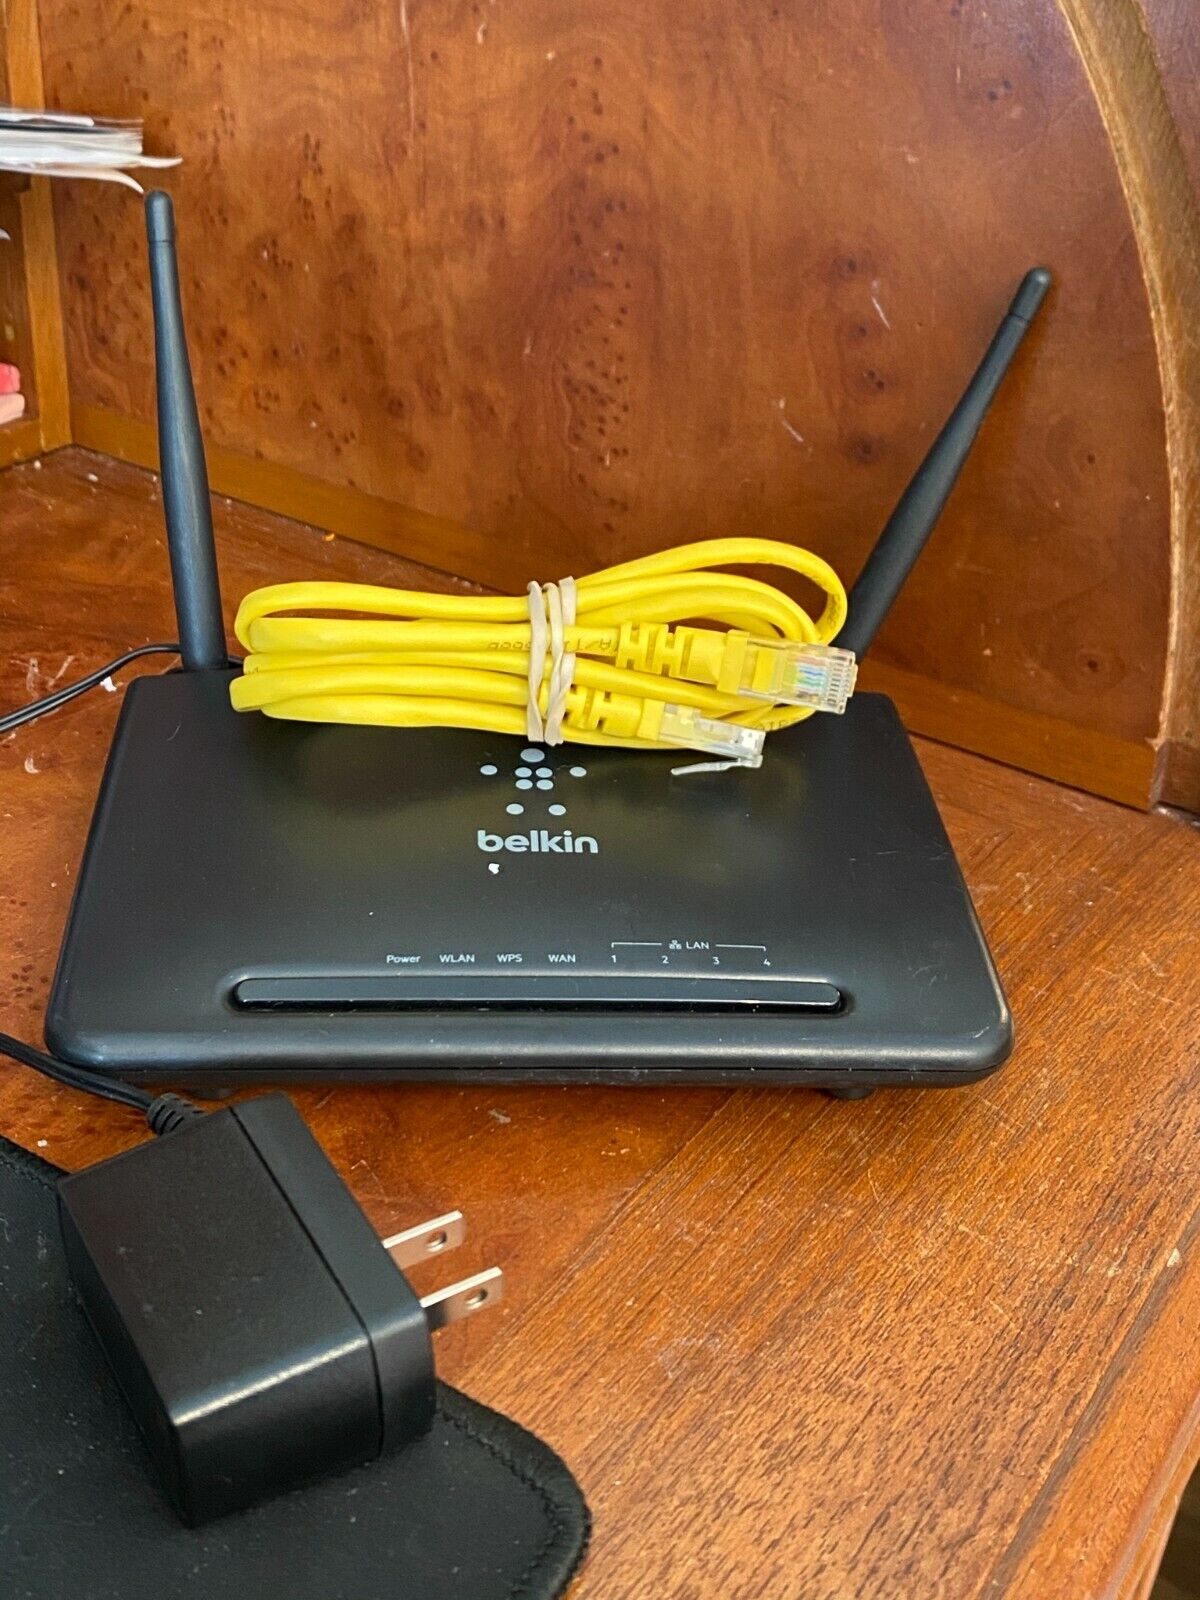 Belkin N300 Wi-Fi Wireless Router F9K1010v2 Lan Cable Power Plug